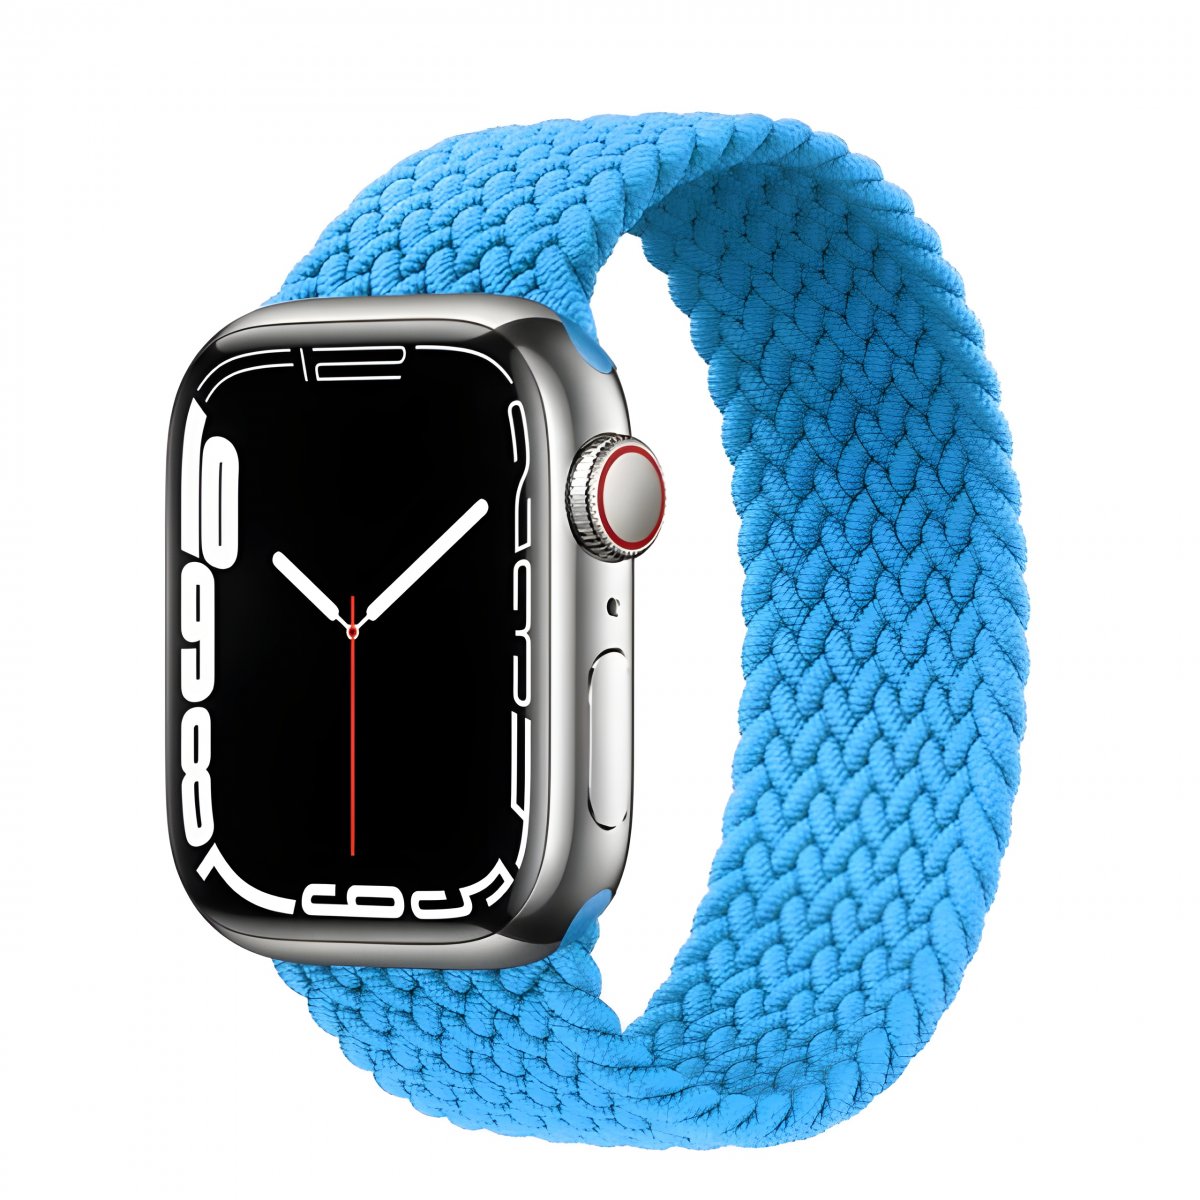 Řemínek iMore Braided Solo Loop Apple Watch Series 1/2/3 42mm - bazénově modrá (L)